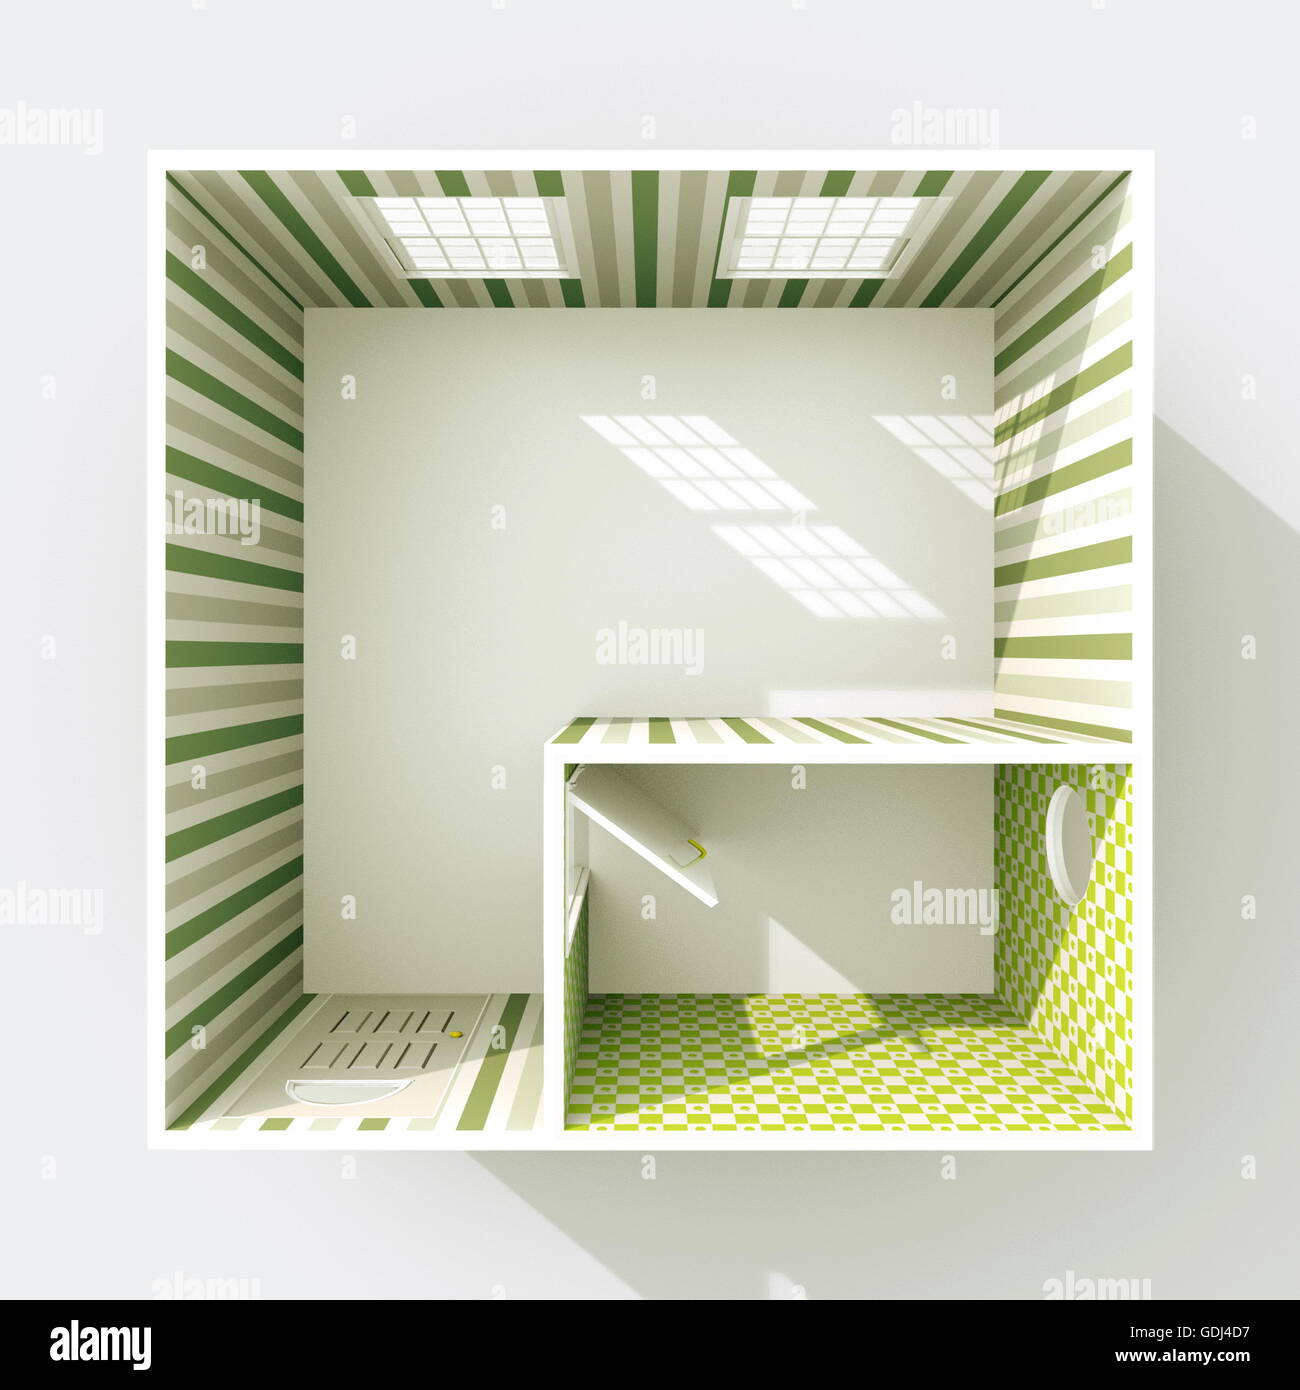 Le rendu 3D Intérieur vue en plan du vide accueil appartement avec papier peint à rayures vert materials Banque D'Images